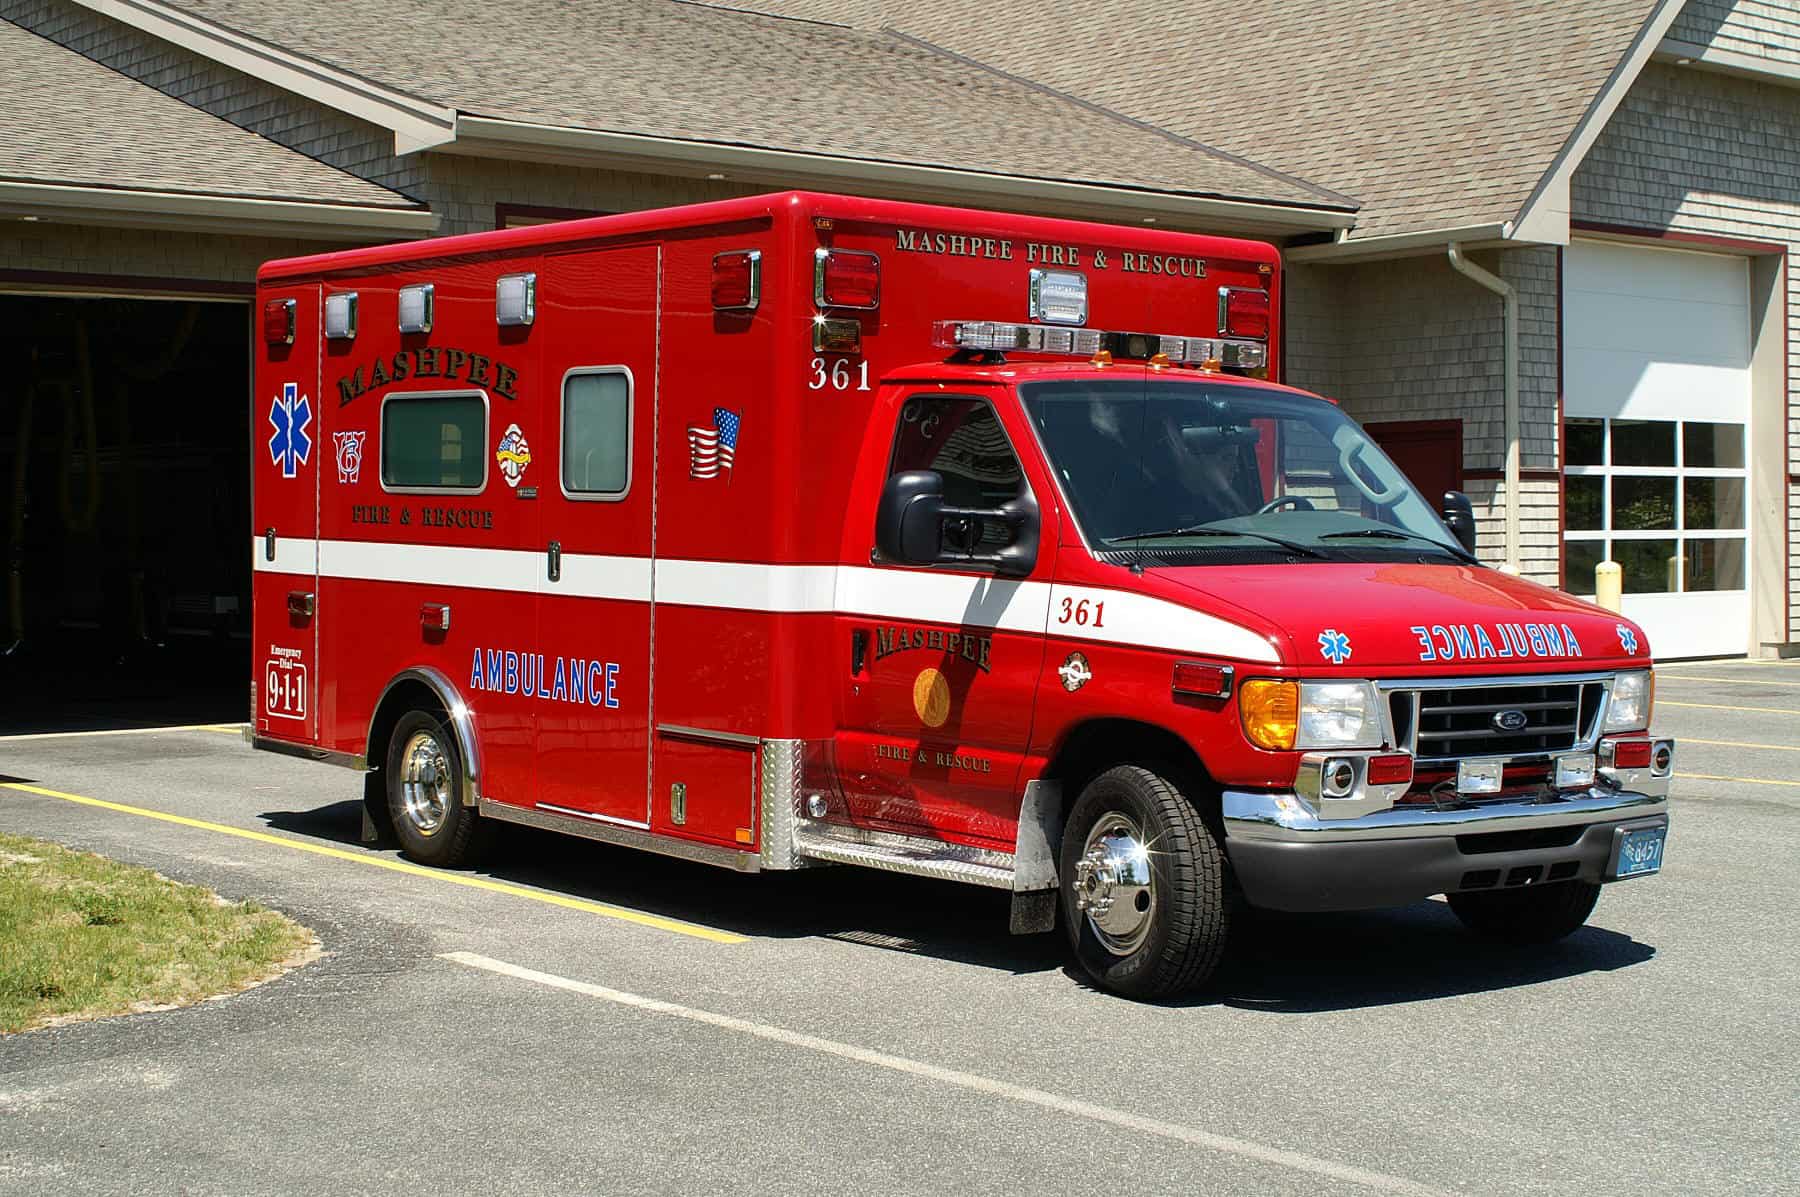 Ambulance via Wikicommons.